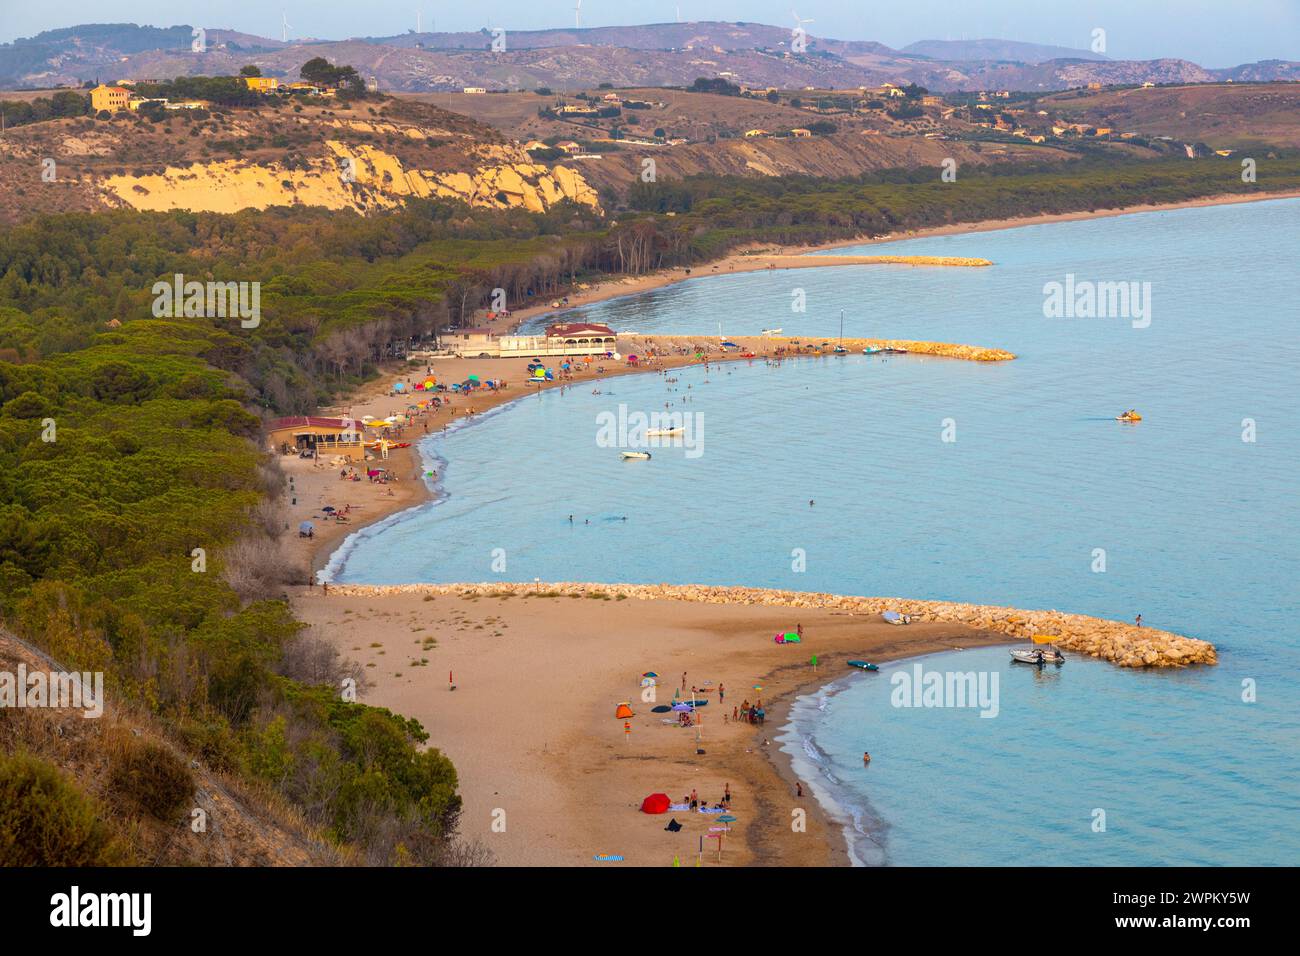 Spiaggia di Eraclea Minoa, vue panoramique sur la plage, Sicile, Italie, Méditerranée, Europe Banque D'Images